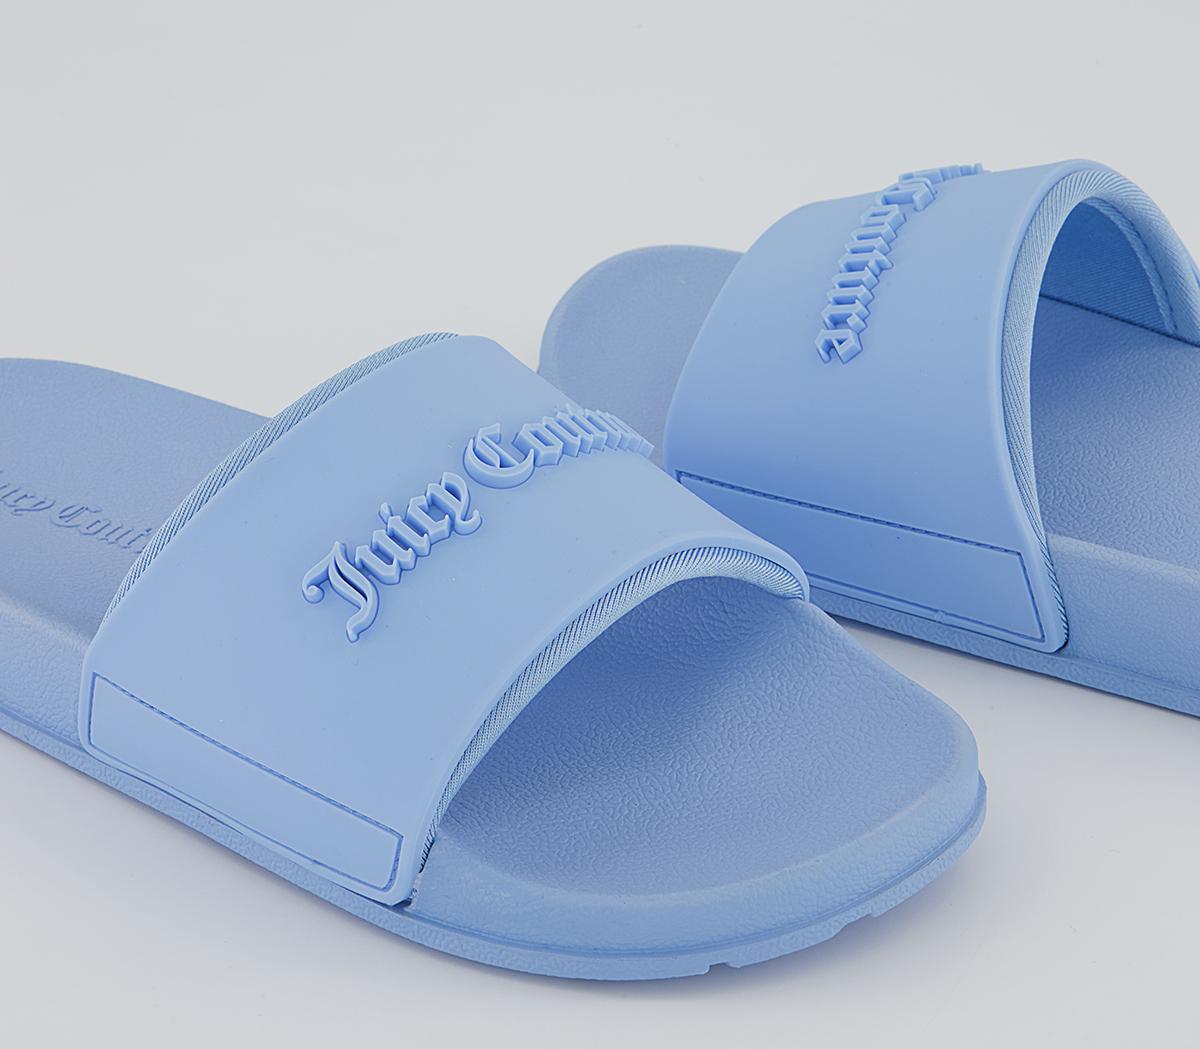 Juicy Couture Breanna Debossed Sliders Baby Blue - Footbeds